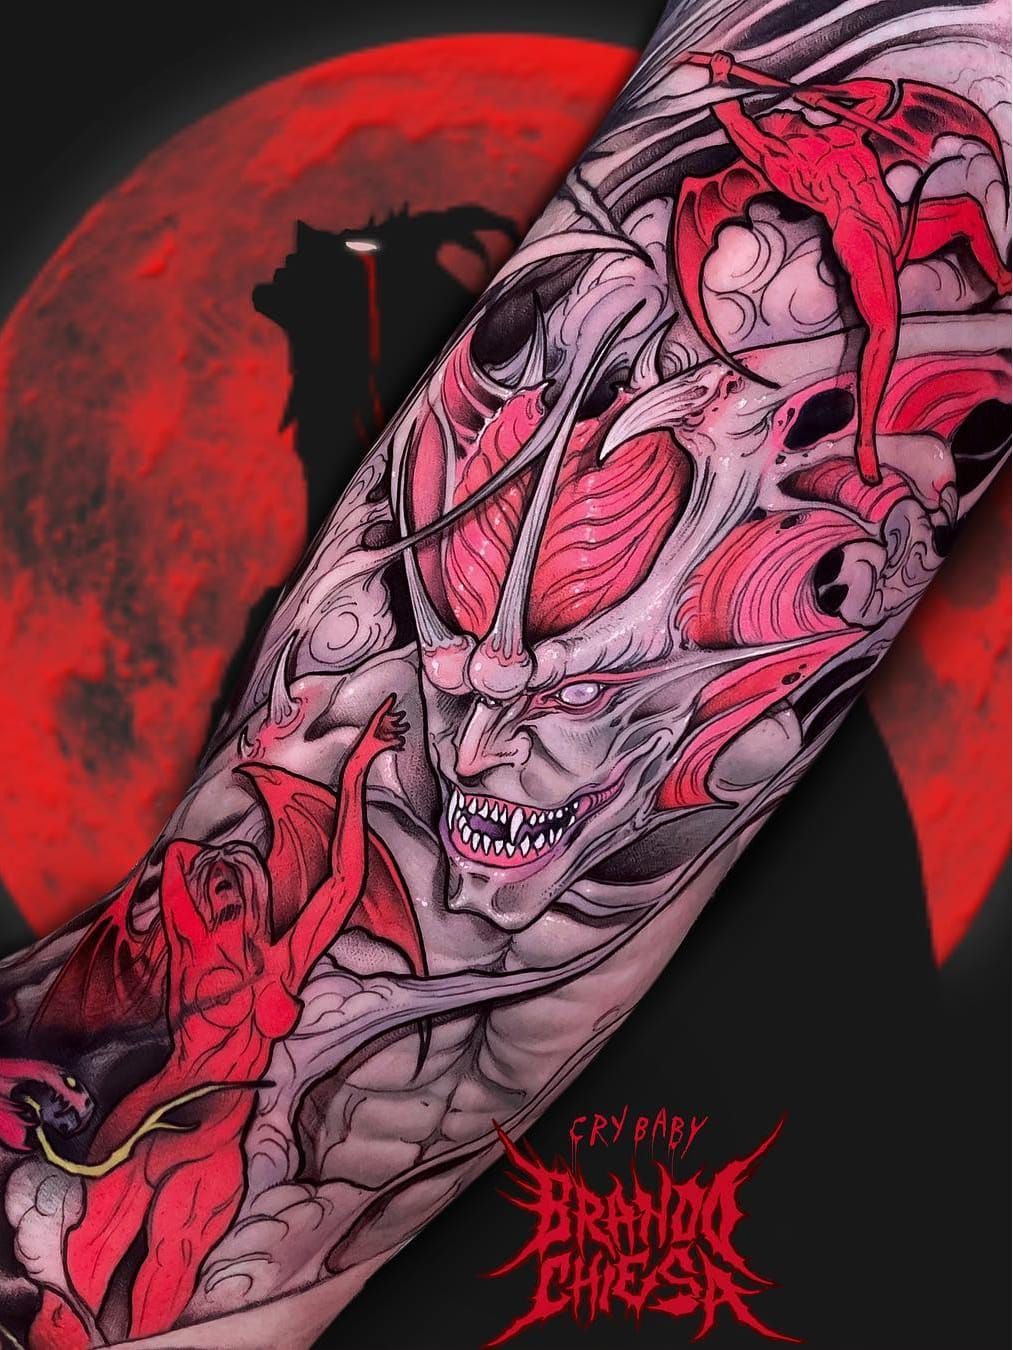 Tribal Tattoo Art With Black Evil Demon Face Stockvectorkunst en meer  beelden van Krampus  Krampus Print Antropomorfisch gezicht  iStock